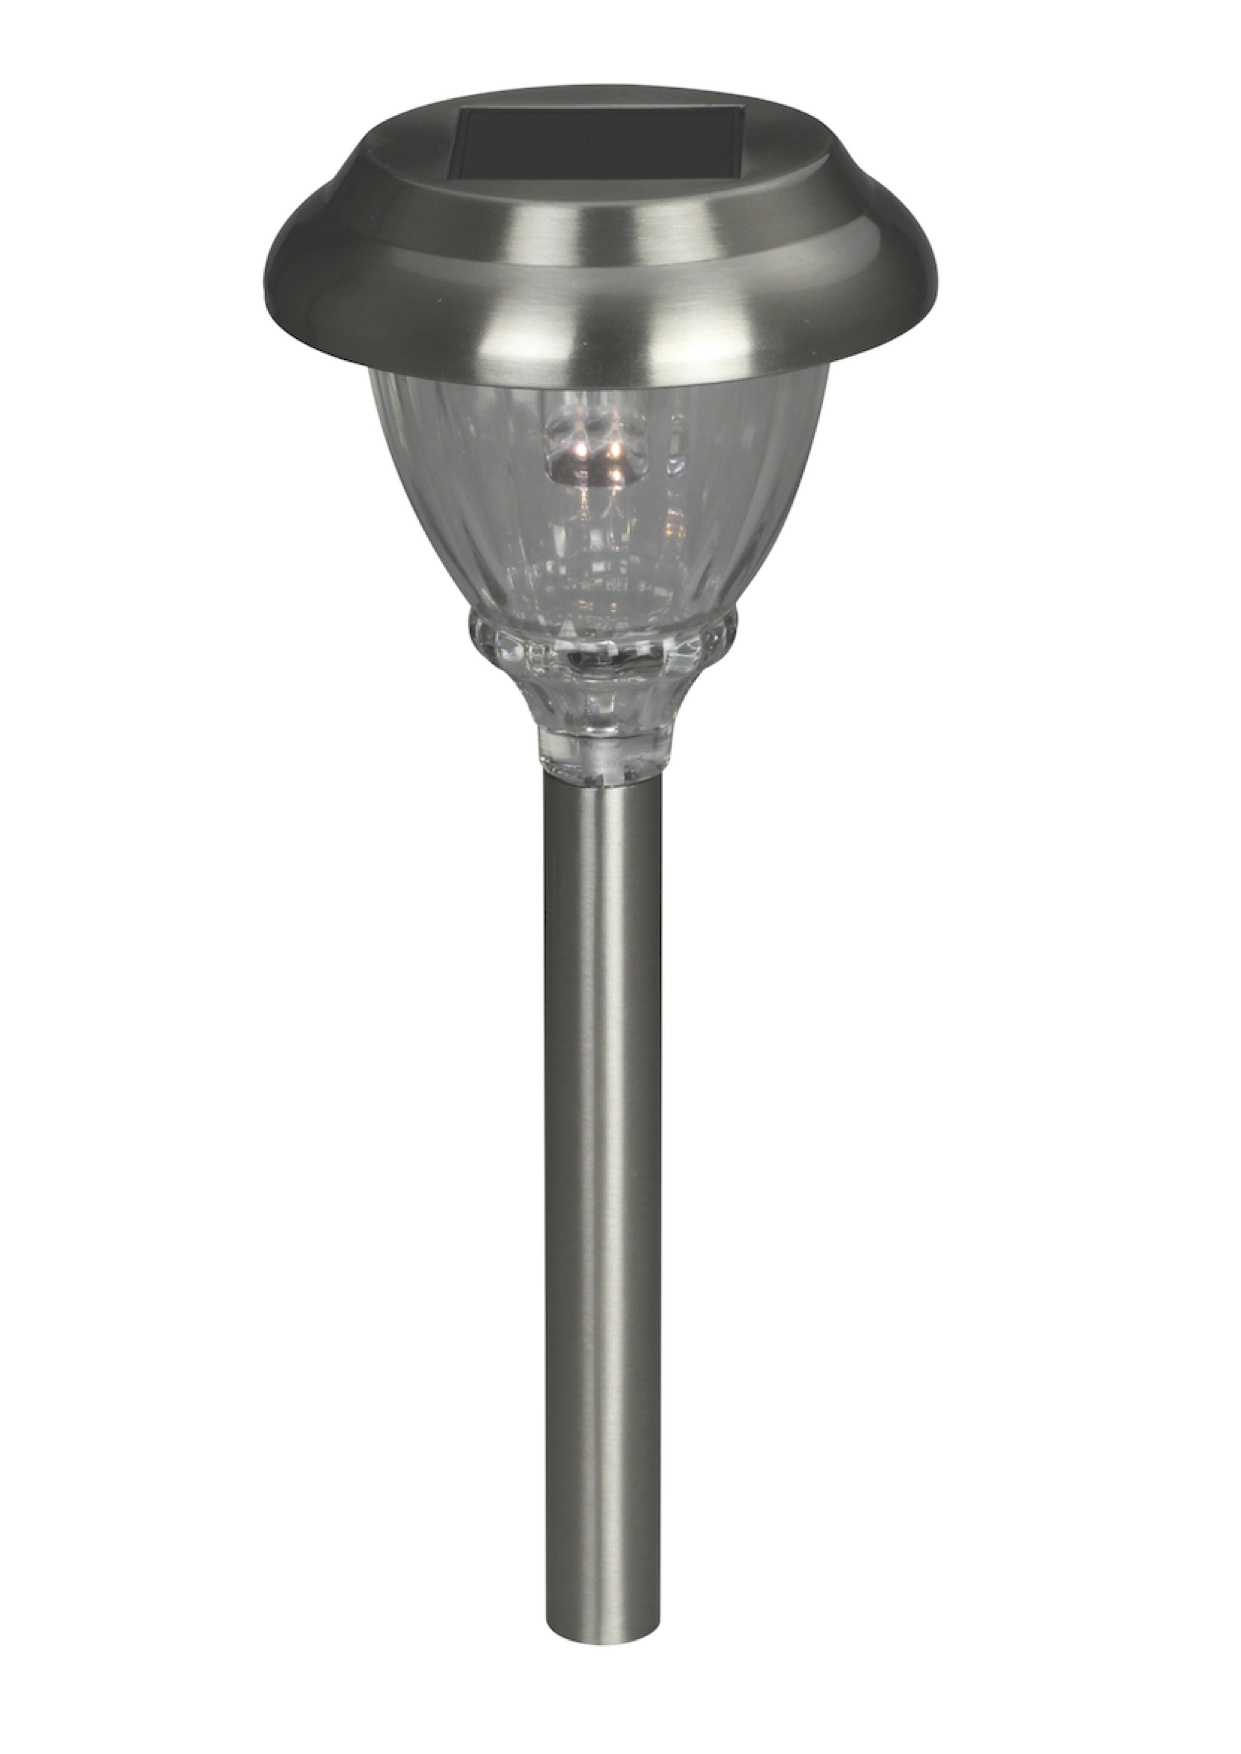 Lampe Solaire Hybride Annecy 6 Lumens concernant Pile Pour Lampe Solaire De Jardin